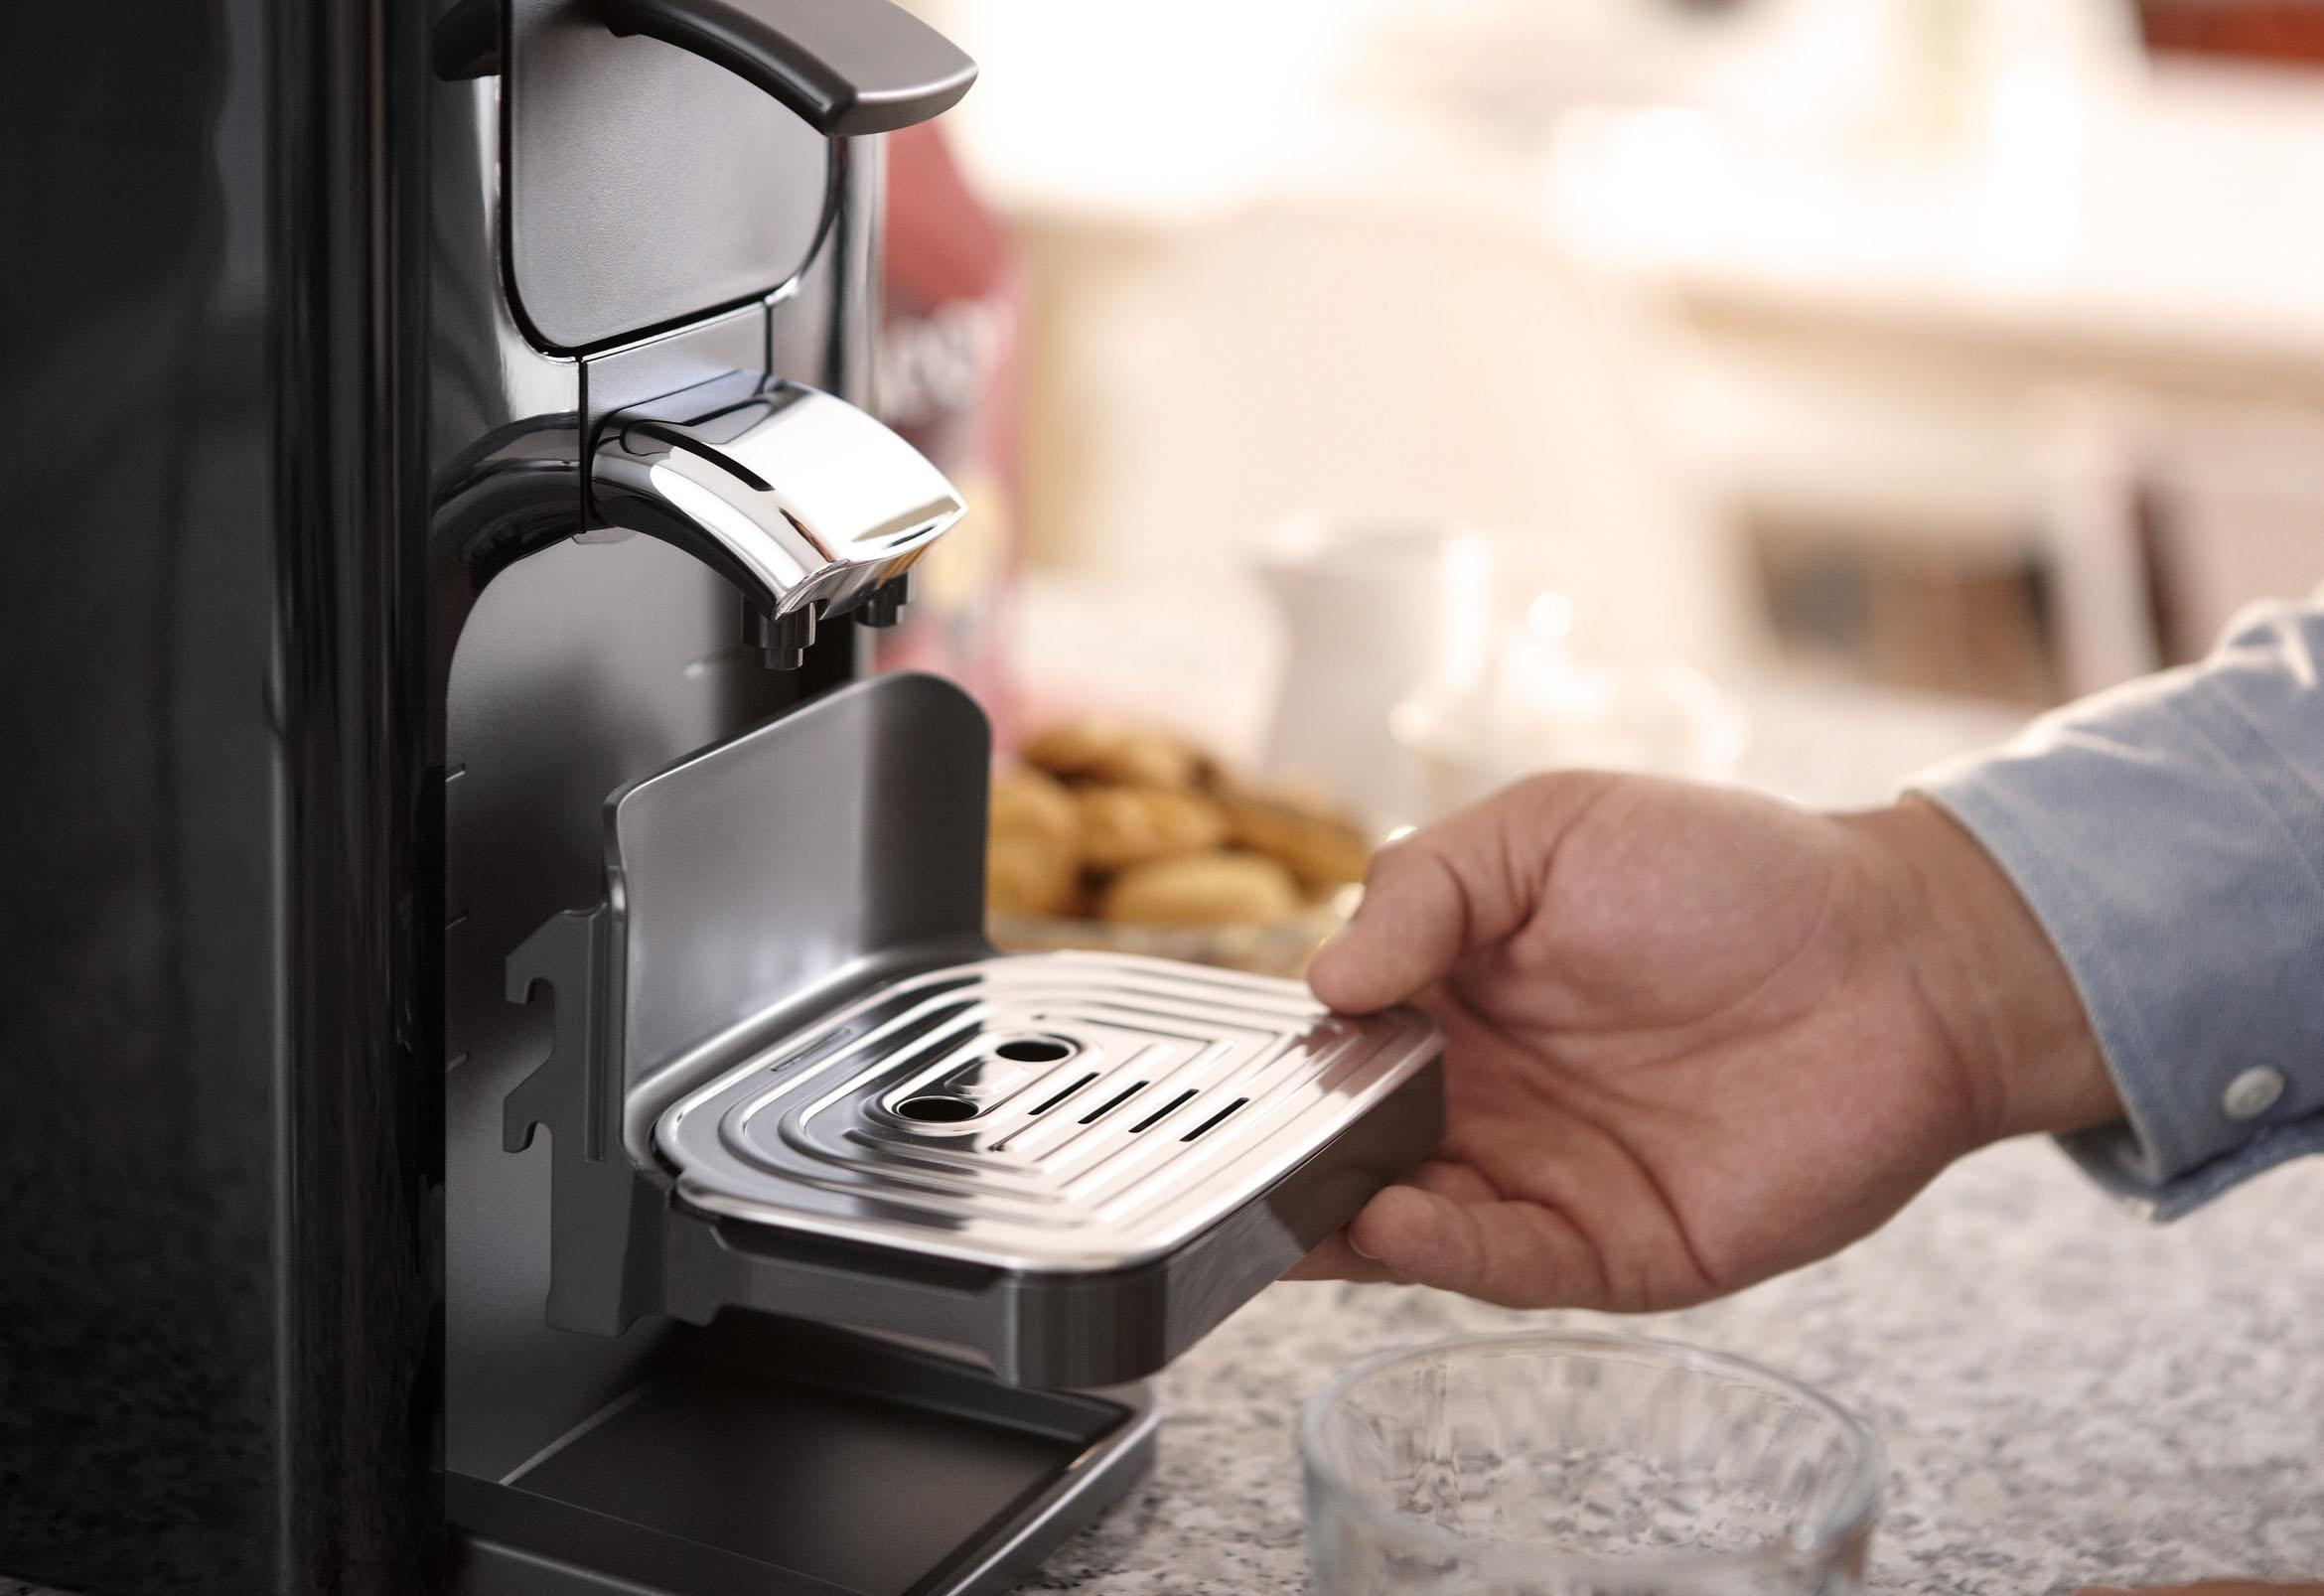 Philips Senseo Kaffeepadmaschine inkl. Quadrante jetzt »SENSEO® -Zugaben HD7865/60«, Shop von Wert 23,90 im Gratis UVP Online im OTTO